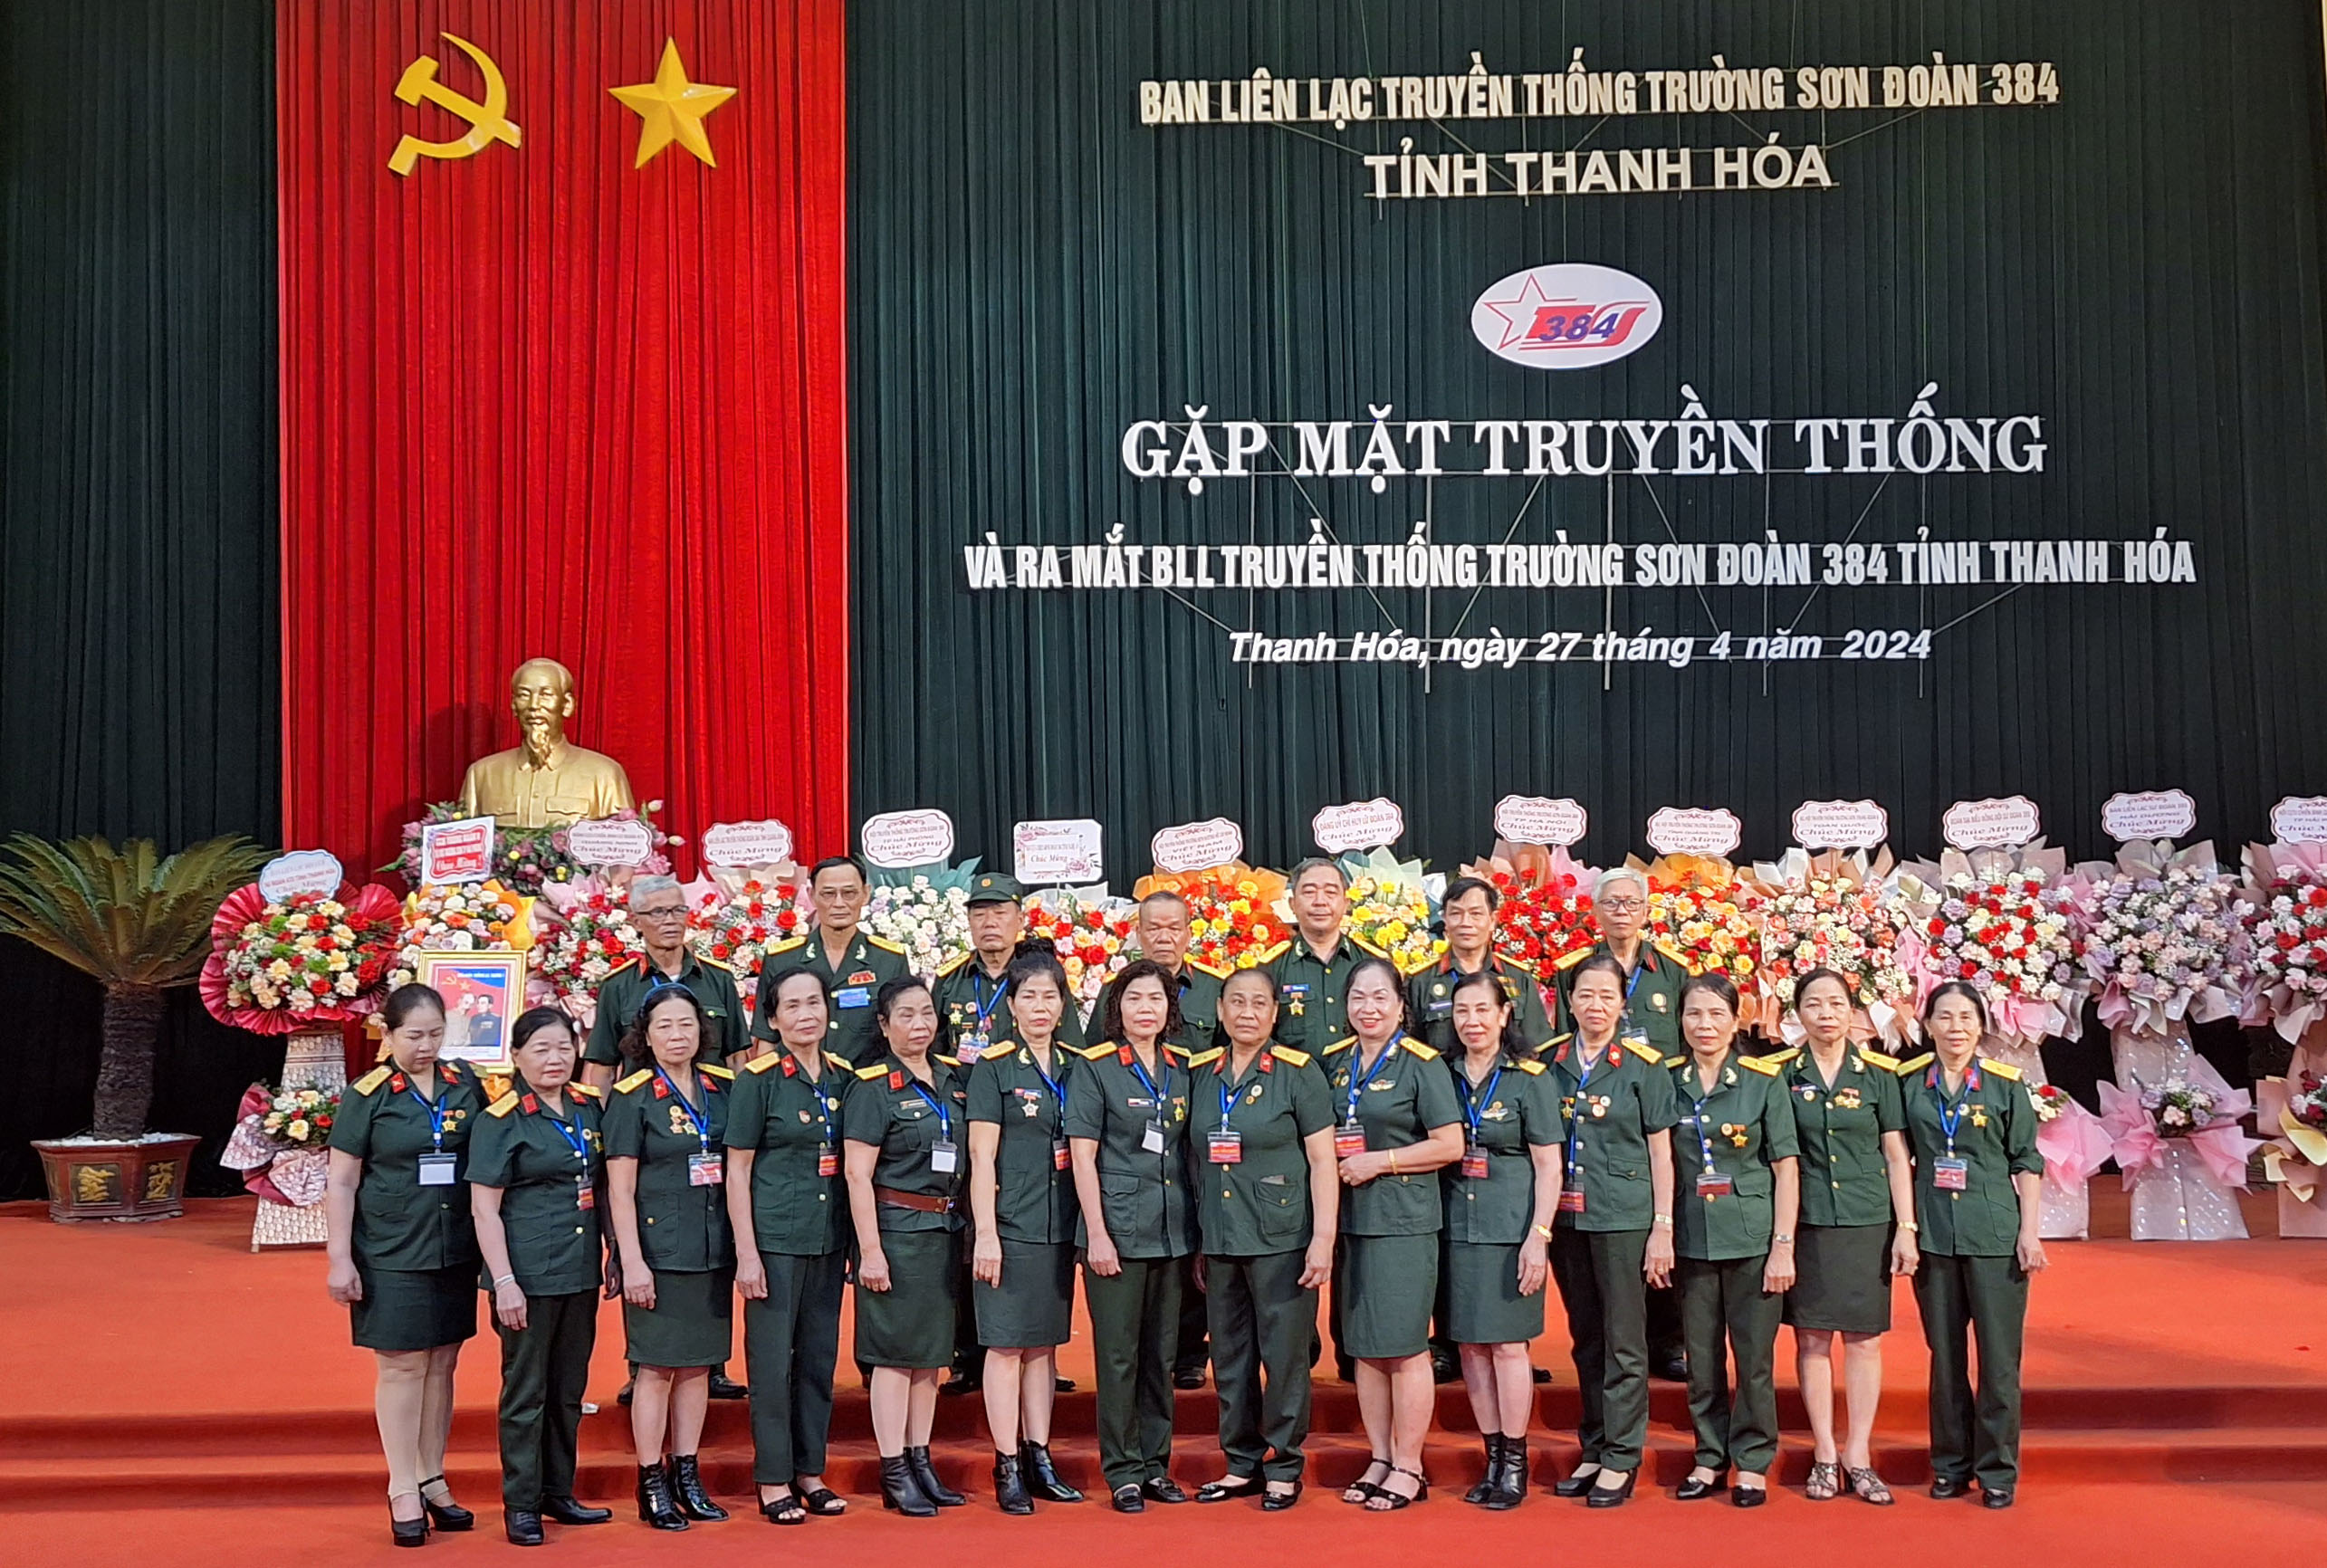 Gặp mặt kỉ niệm 65 năm truyền thống bộ đội Trường Sơn và đoàn 384 anh hùng; ra mắt BLL Đoàn 384 tỉnh Thanh Hoá